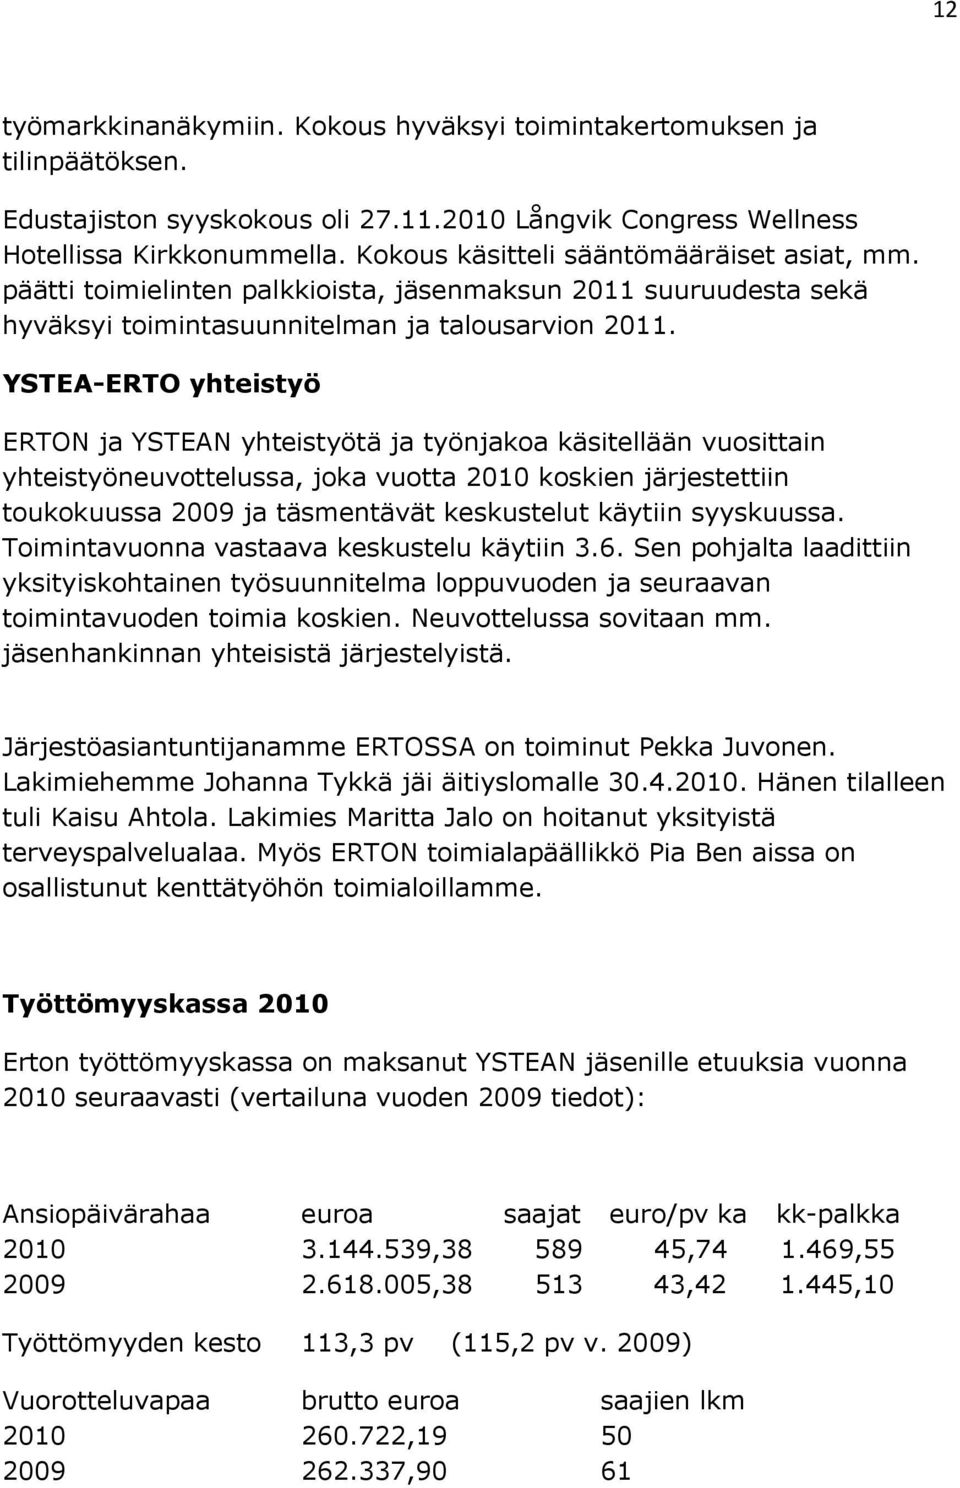 YSTEA-ERTO yhteistyö ERTON ja YSTEAN yhteistyötä ja työnjakoa käsitellään vuosittain yhteistyöneuvottelussa, joka vuotta 2010 koskien järjestettiin toukokuussa 2009 ja täsmentävät keskustelut käytiin